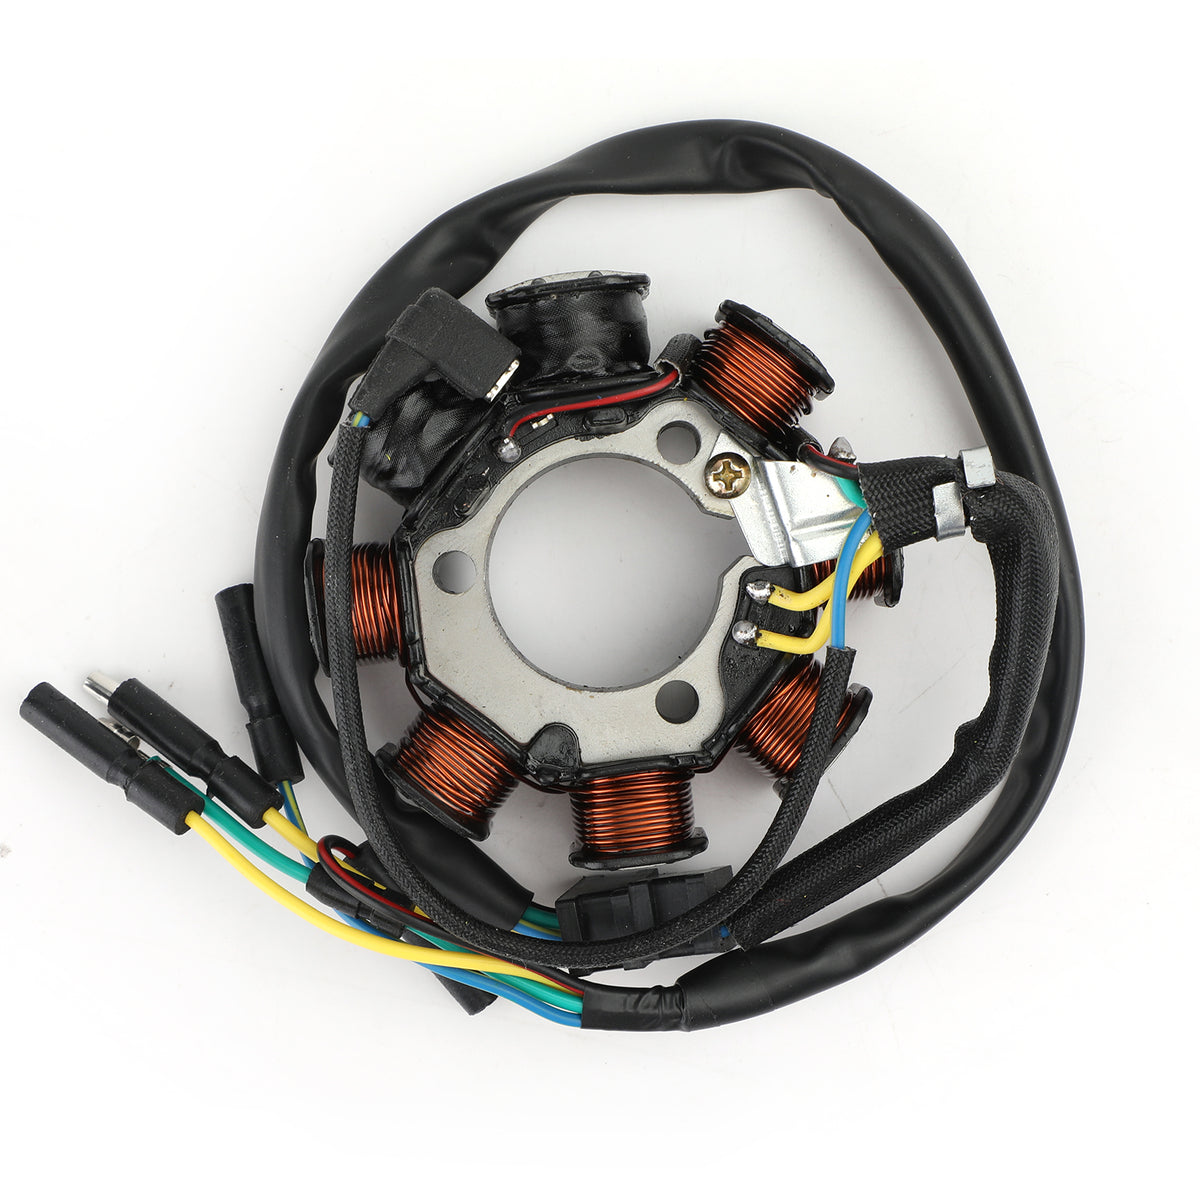 Bobina magnete statore per Honda FourTrax 200 86-88 31120-HB3-004 31120-HB3-014